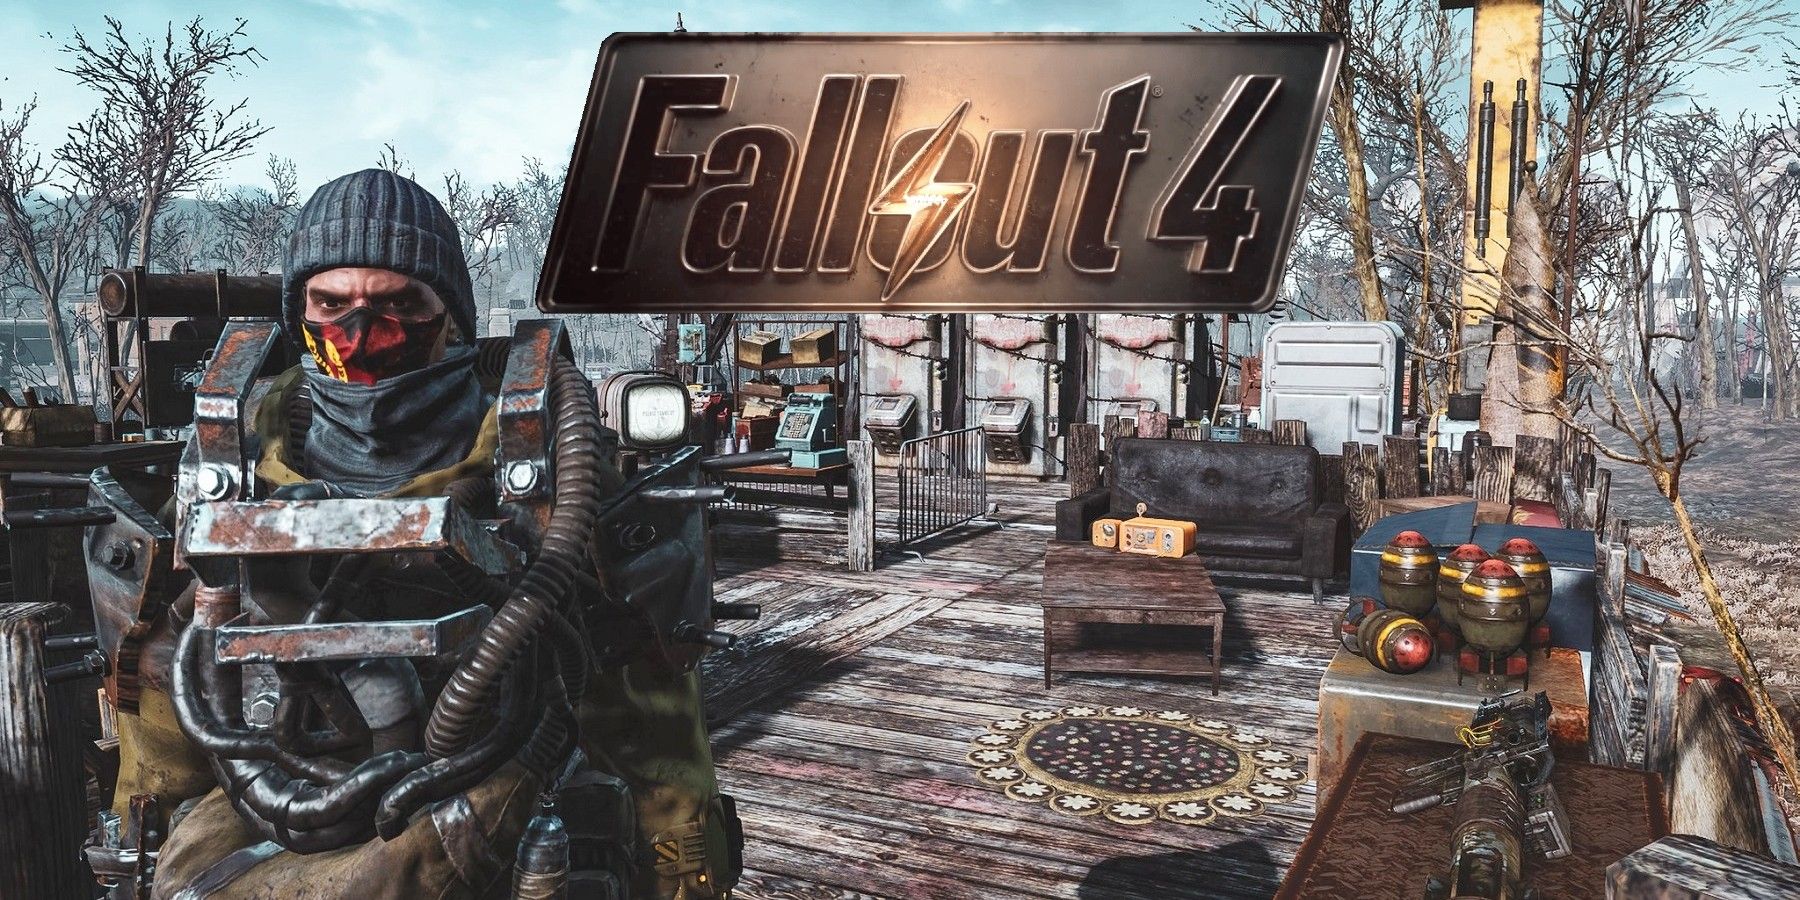 Fallout 4 престон гарви не разговаривает в сэнкчуари после конкорда фото 110